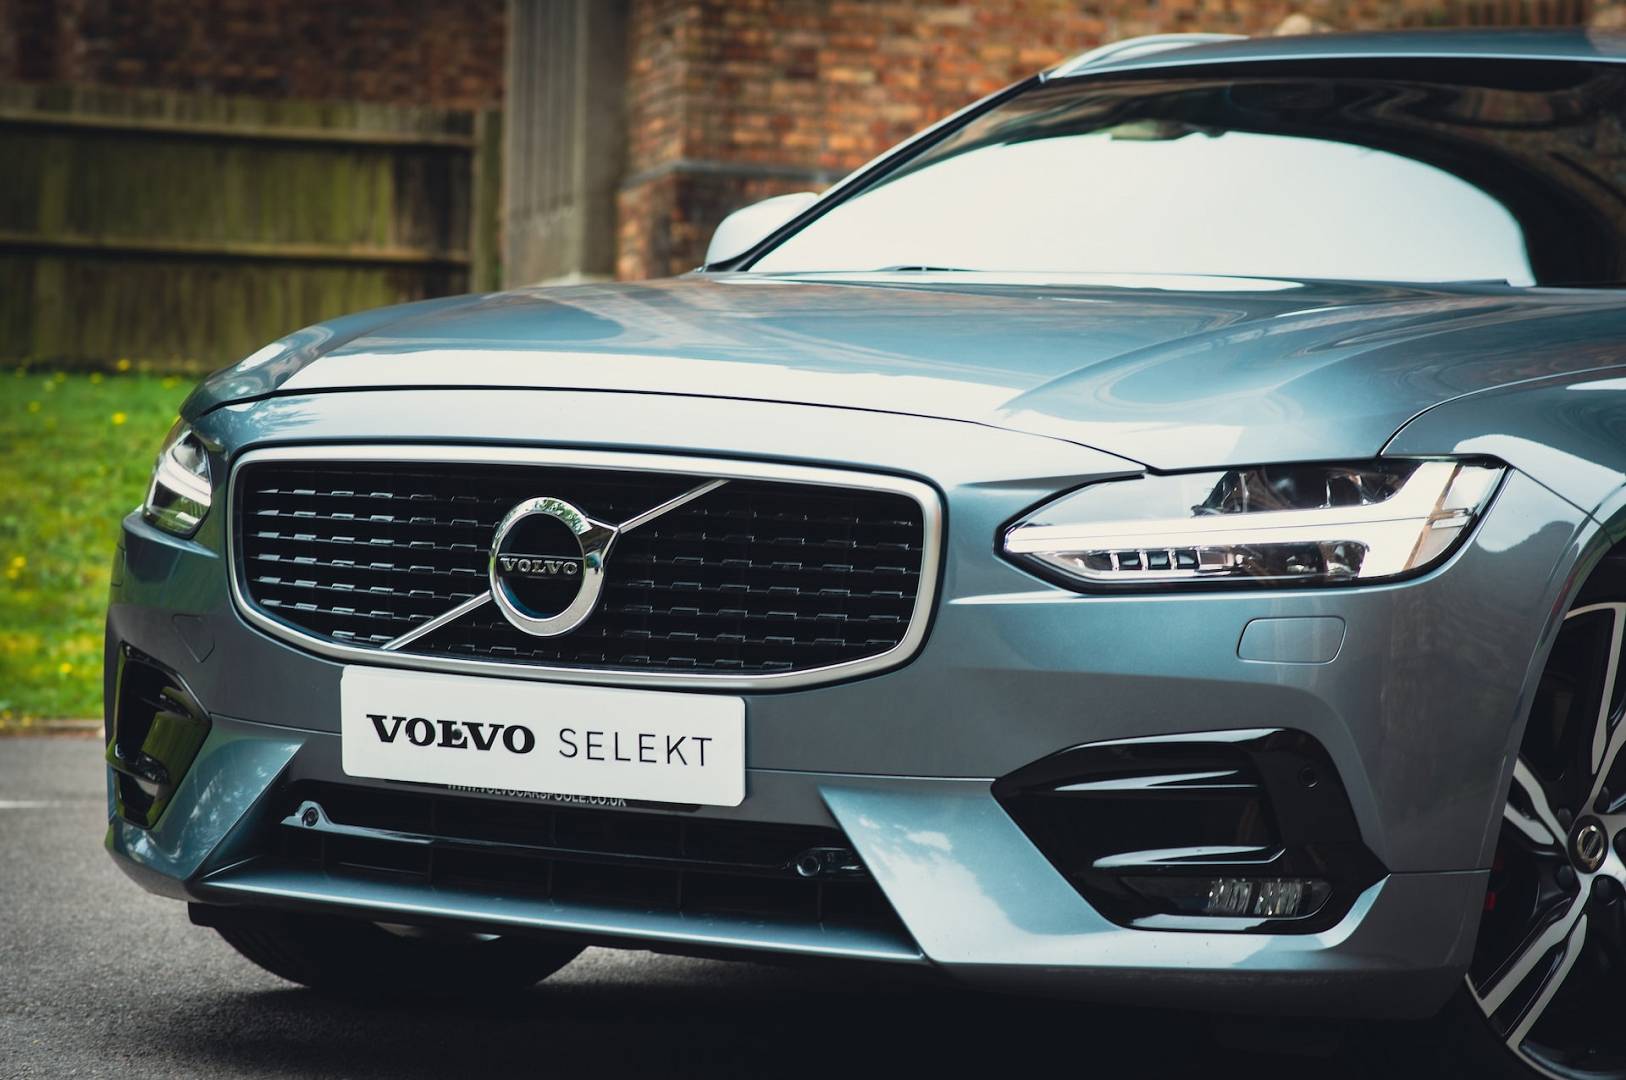 Używane Volvo z gwarancją stoi na podjeździe